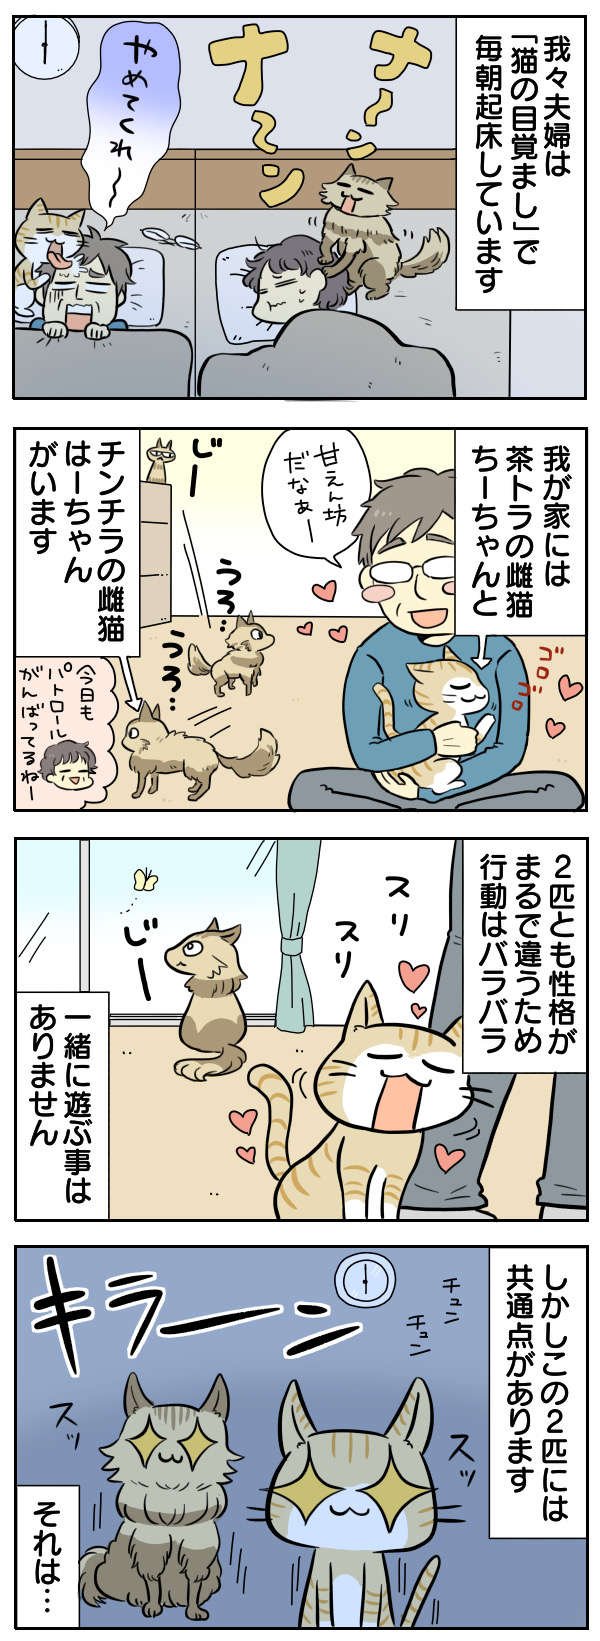 「猫との暮らし」の現実。朝6時に肉球でムニムニで目覚まし...ああ、幸せ【漫画】 No.283_1.jpg